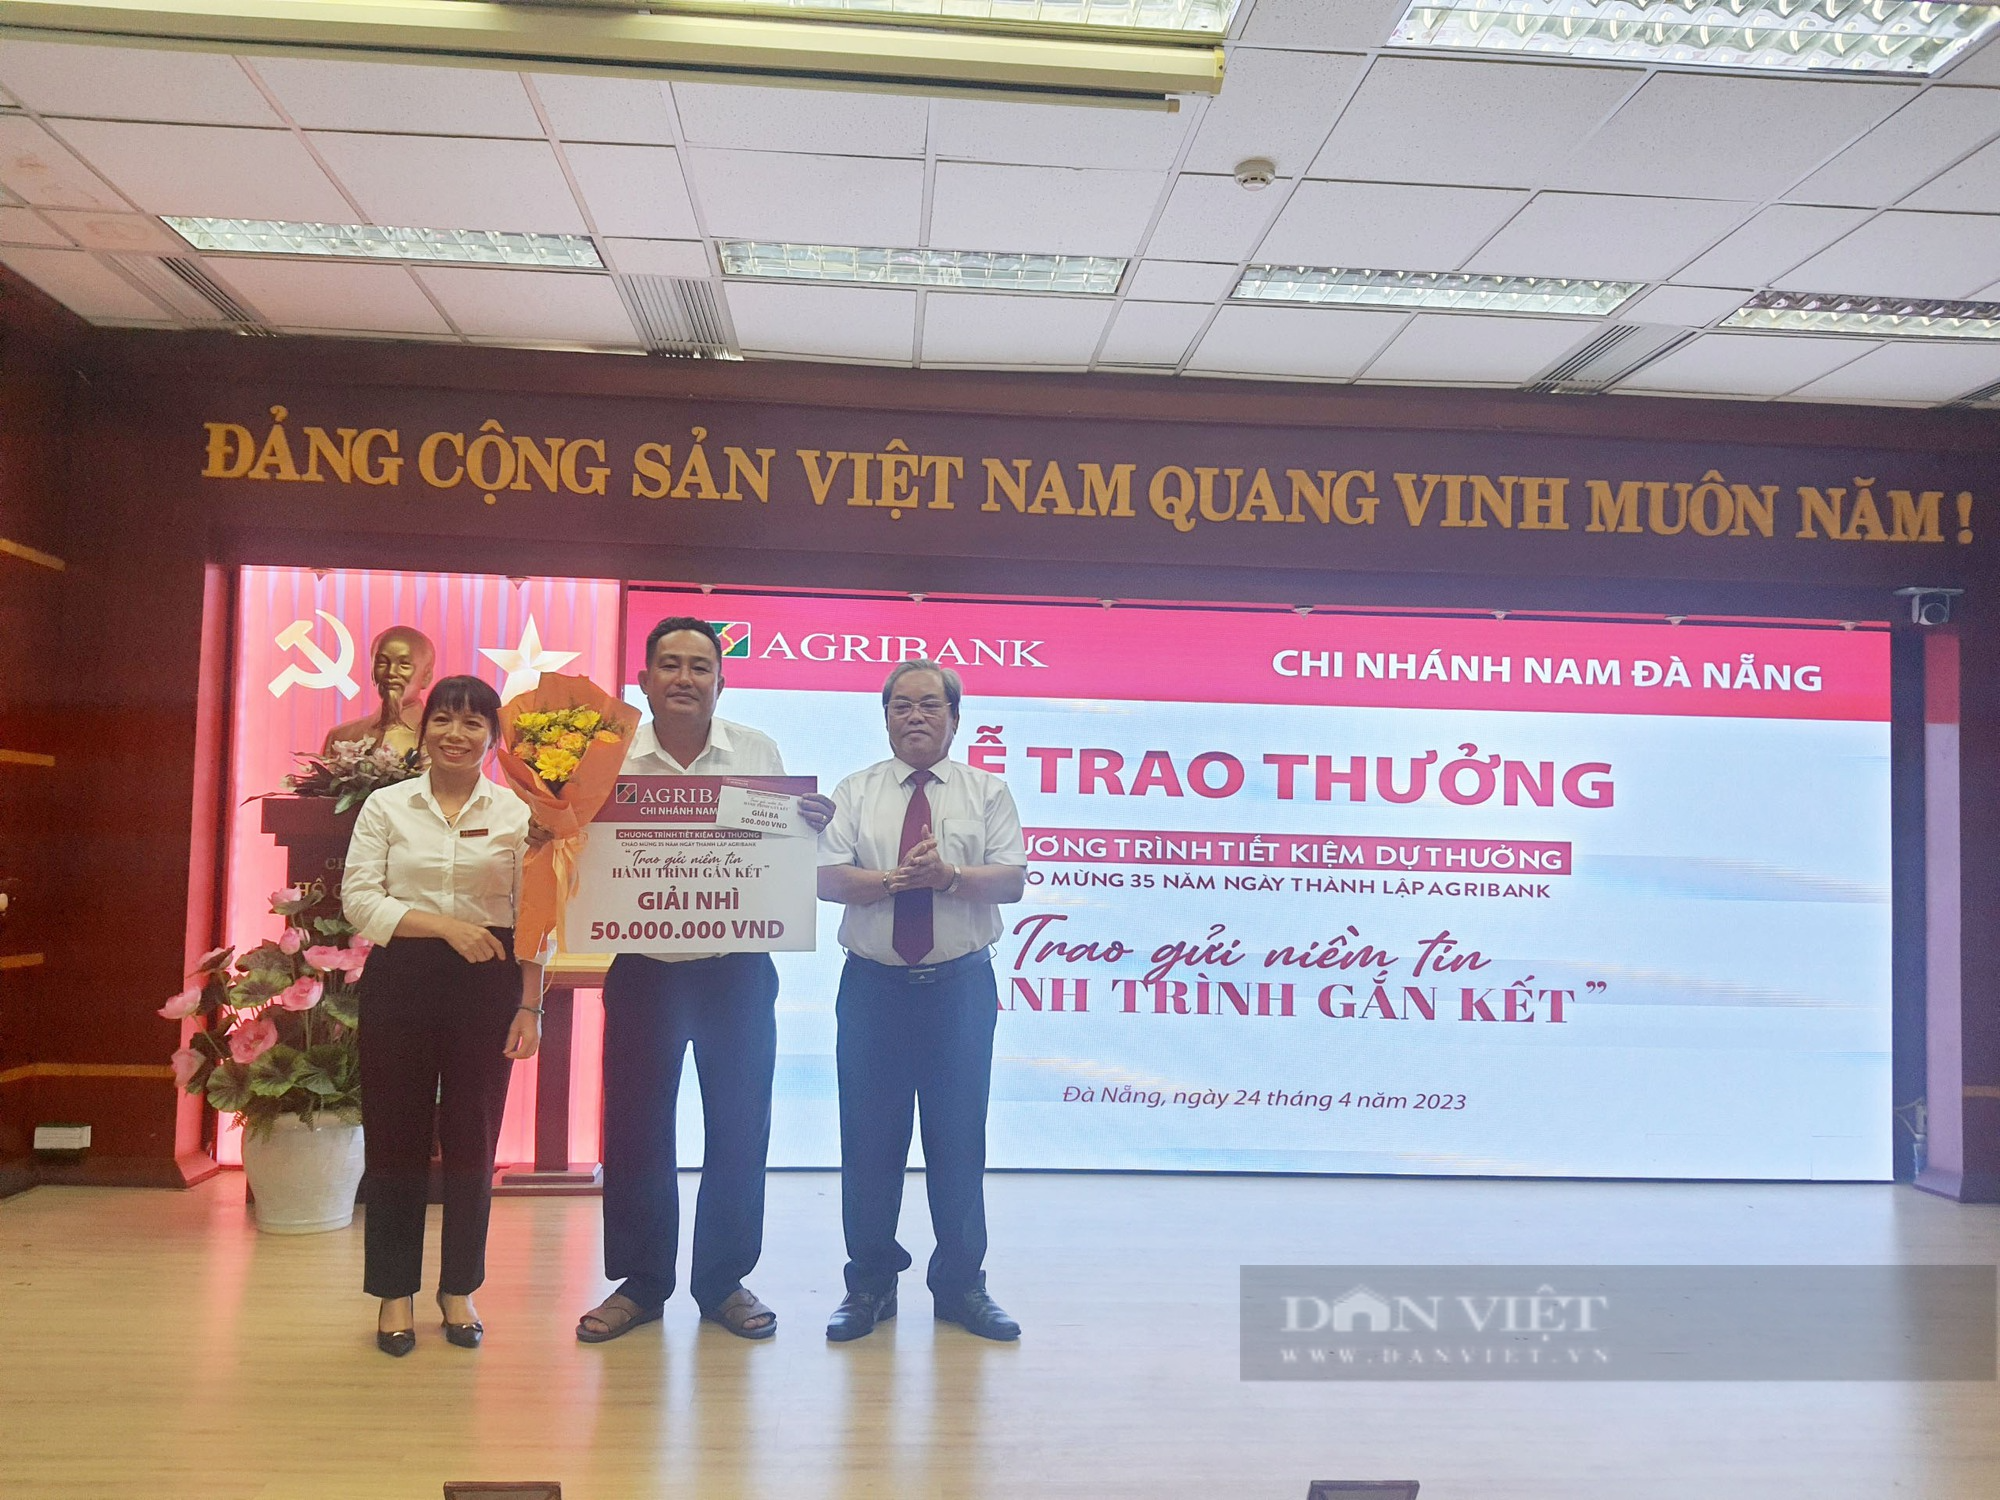 Agribank Nam Đà Nẵng trao giải thưởng Chương trình “Trao gửi niềm tin - Hành trình gắn kết” - Ảnh 2.